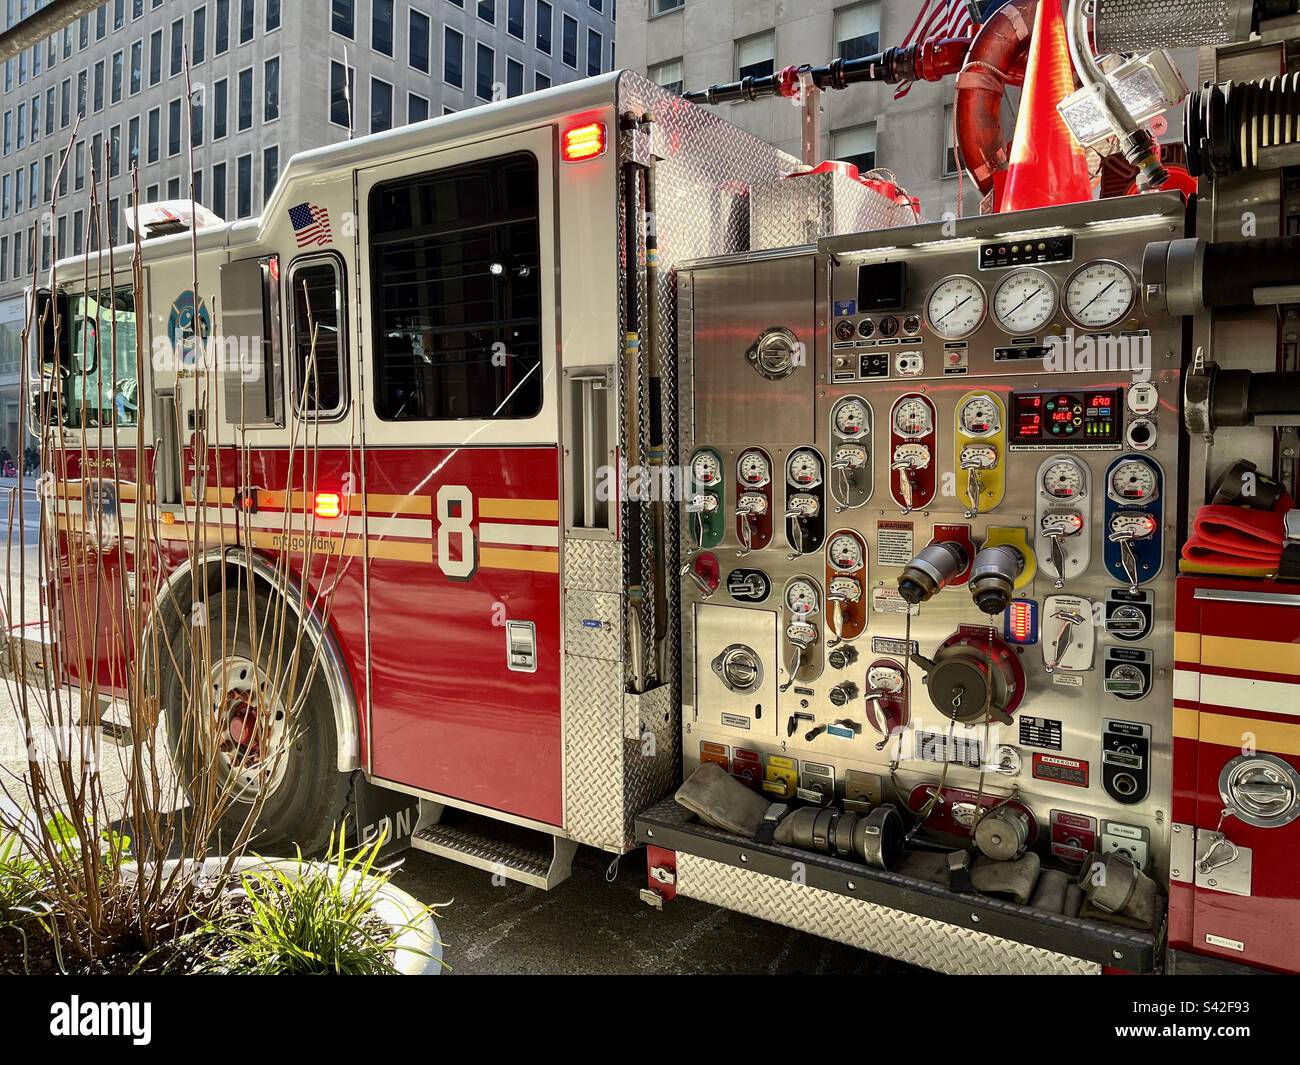 Camion de pompiers américain dans une rue à New York. Photo prise à New York en décembre 2022 Banque D'Images